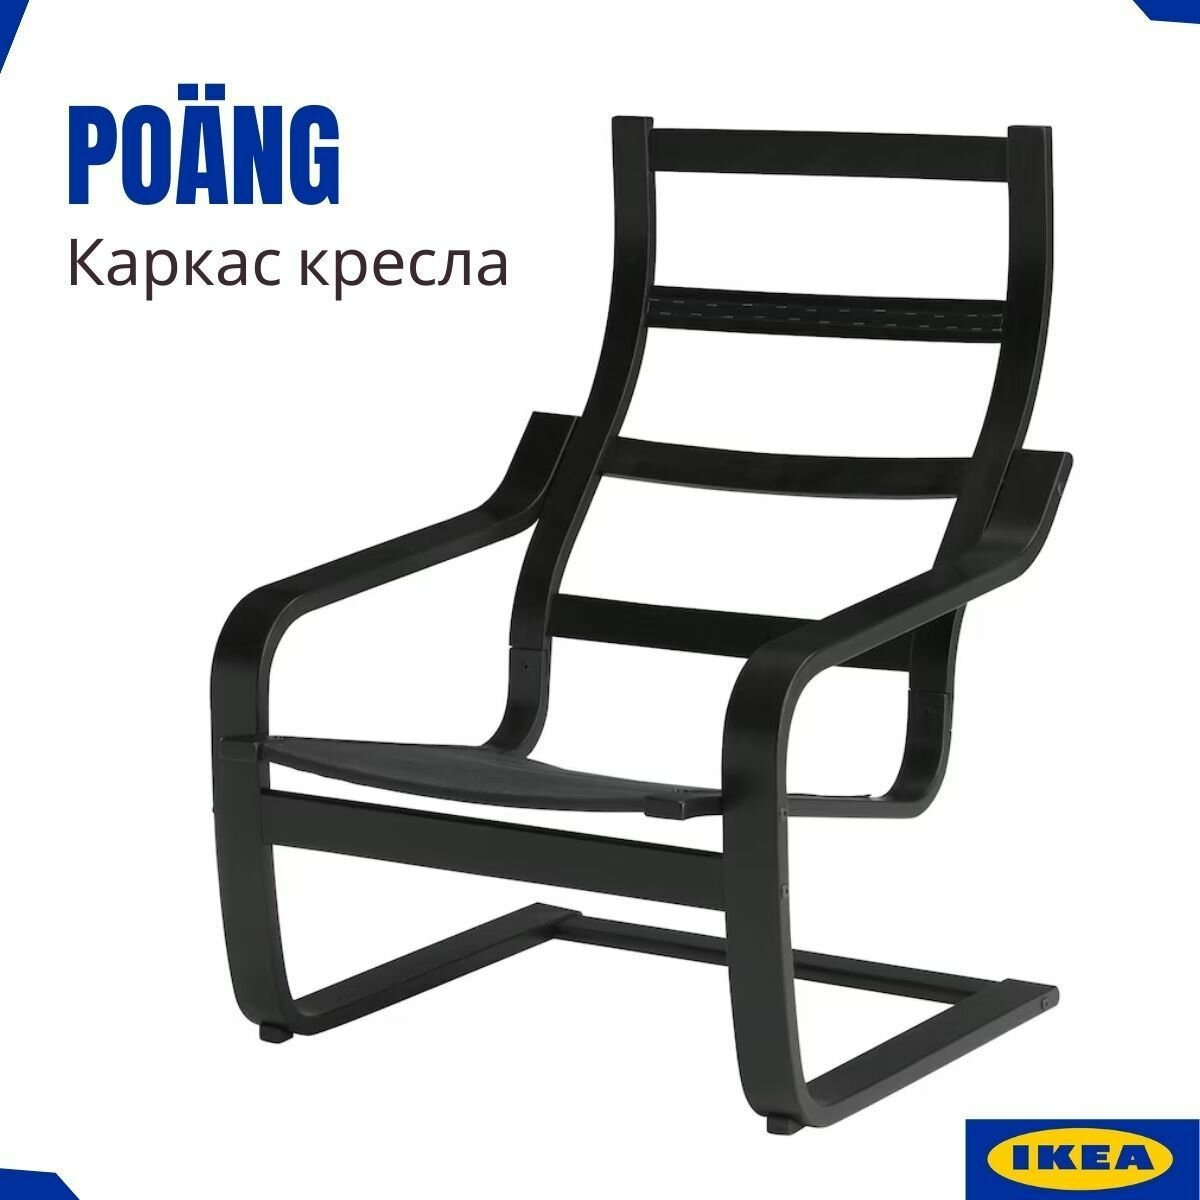 Кресло икеа Поэнг, каркас черно-коричневый. Настоящая продукция IKEA. Каркас из многослойного клееного букового шпона